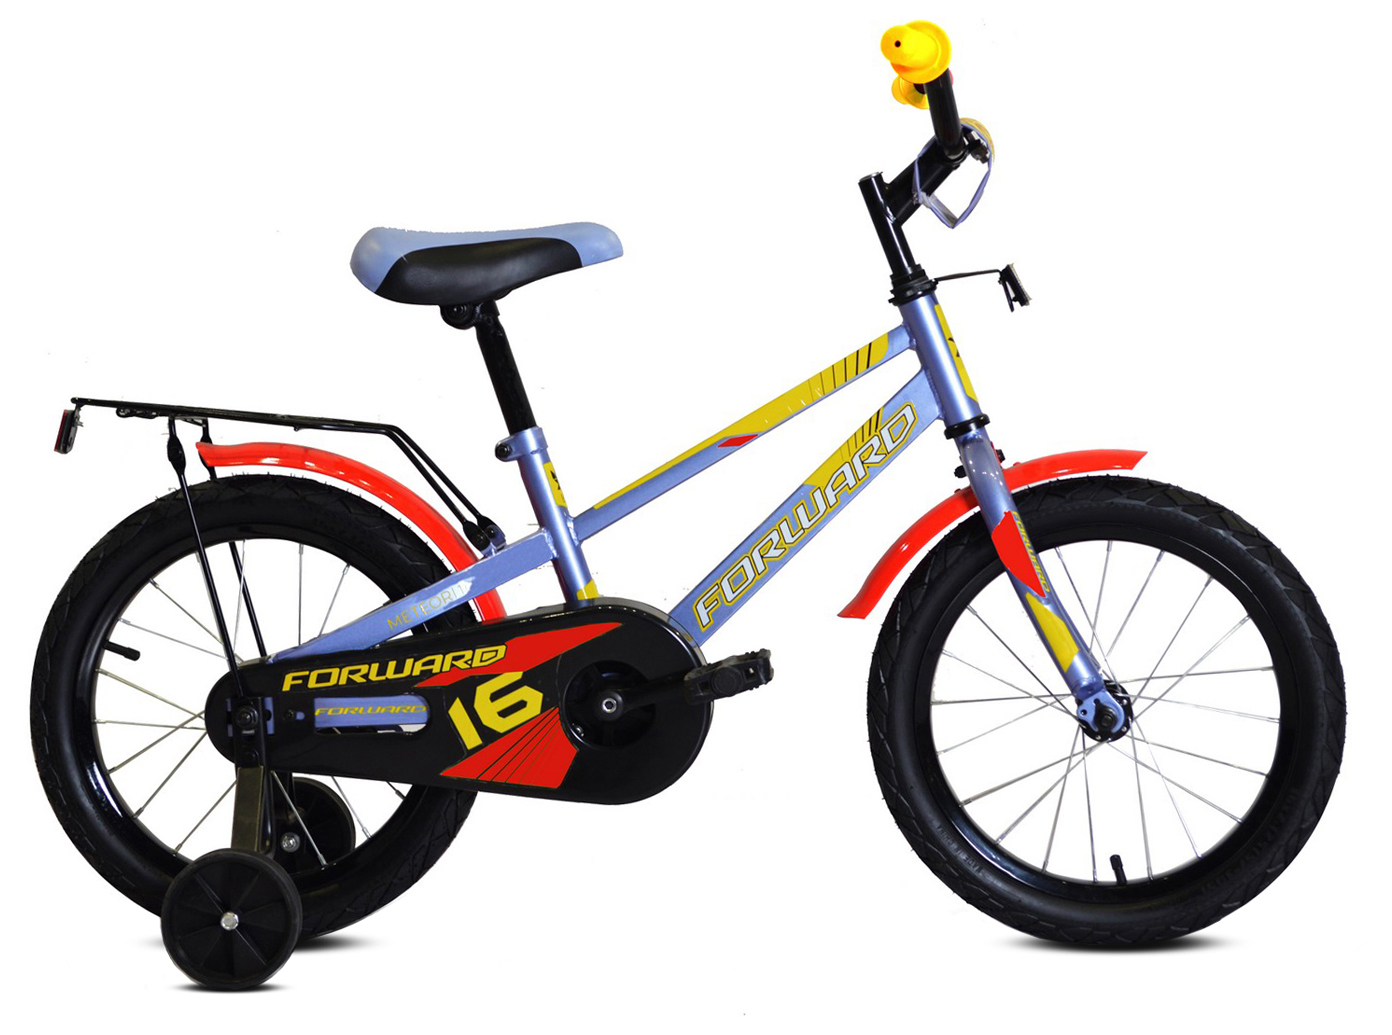  Отзывы о Детском велосипеде Forward Meteor 16 (2021) 2021